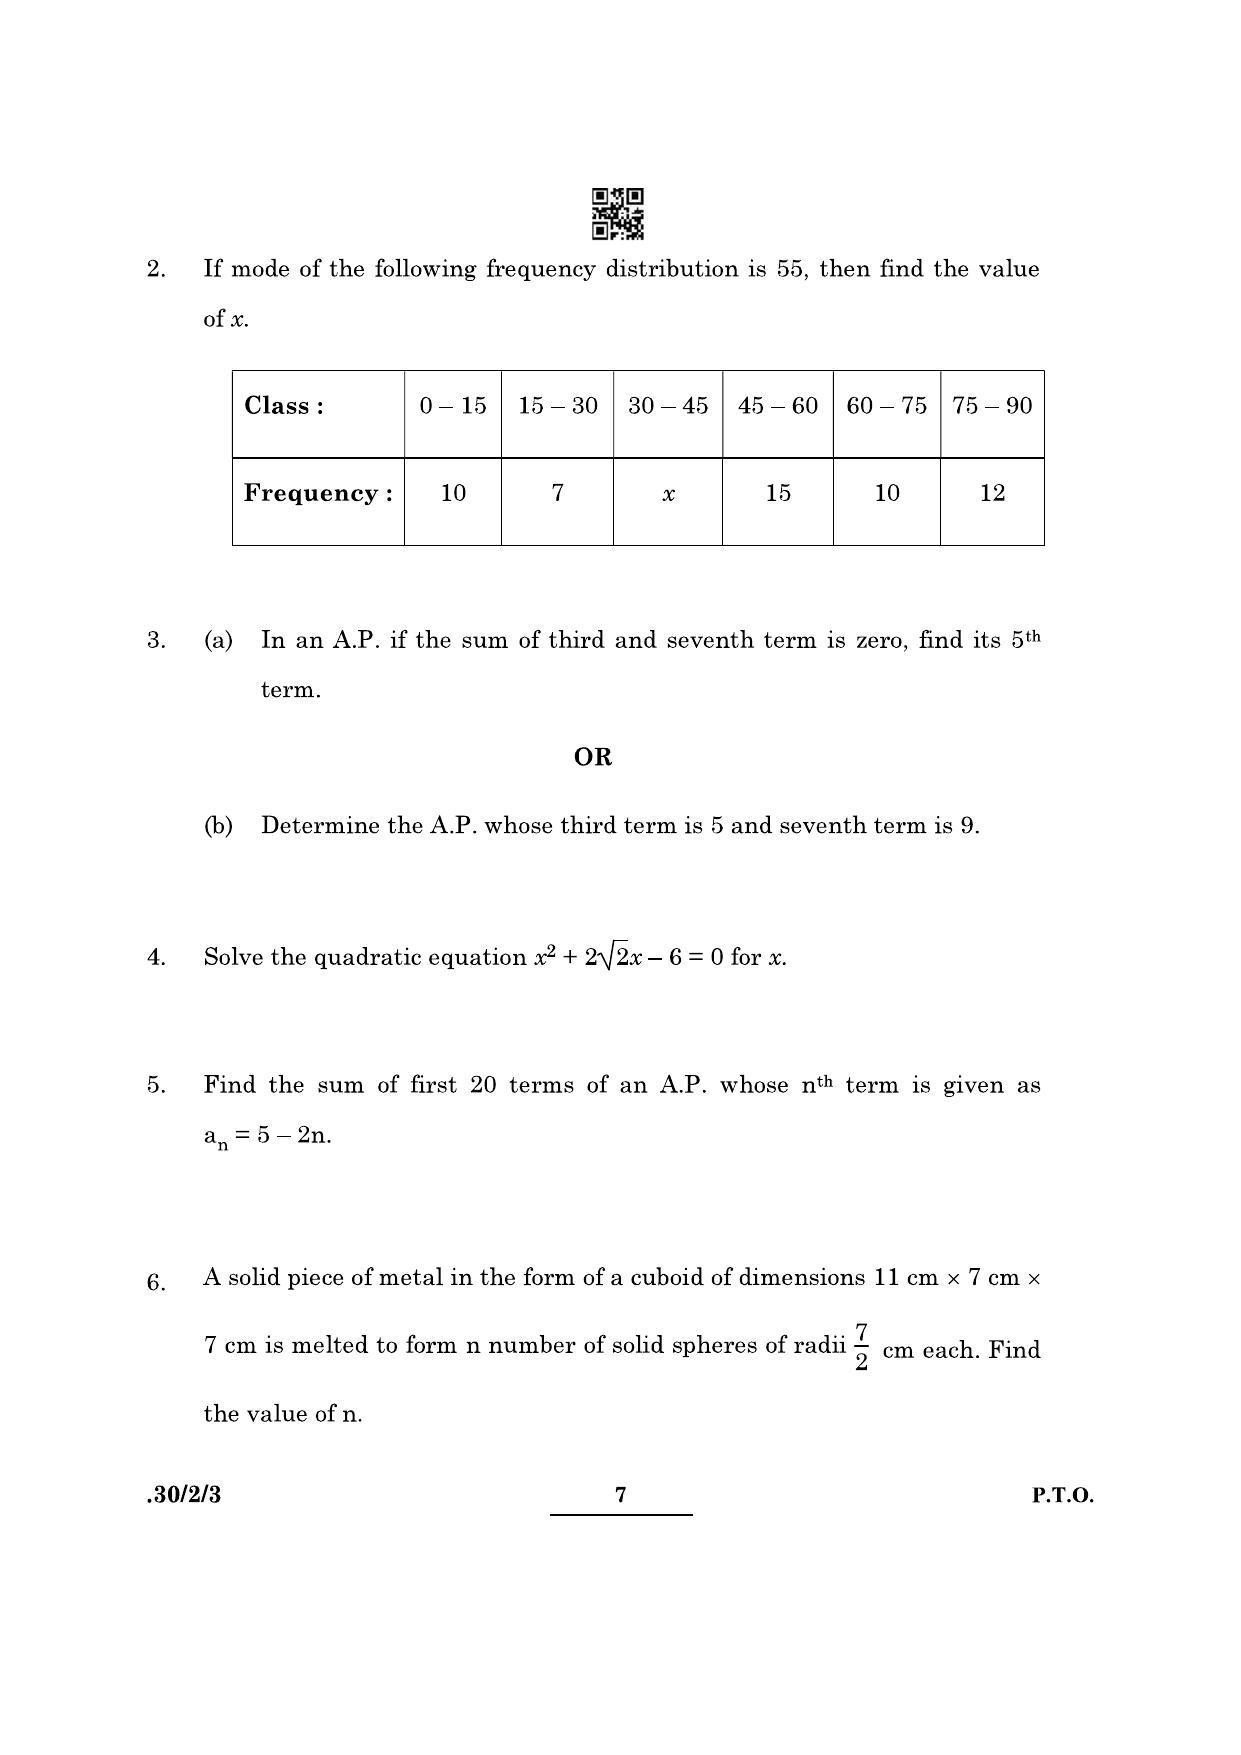 CBSE Class 10 Maths (30/2/3 - SET III) 2022 Question Paper - Page 7